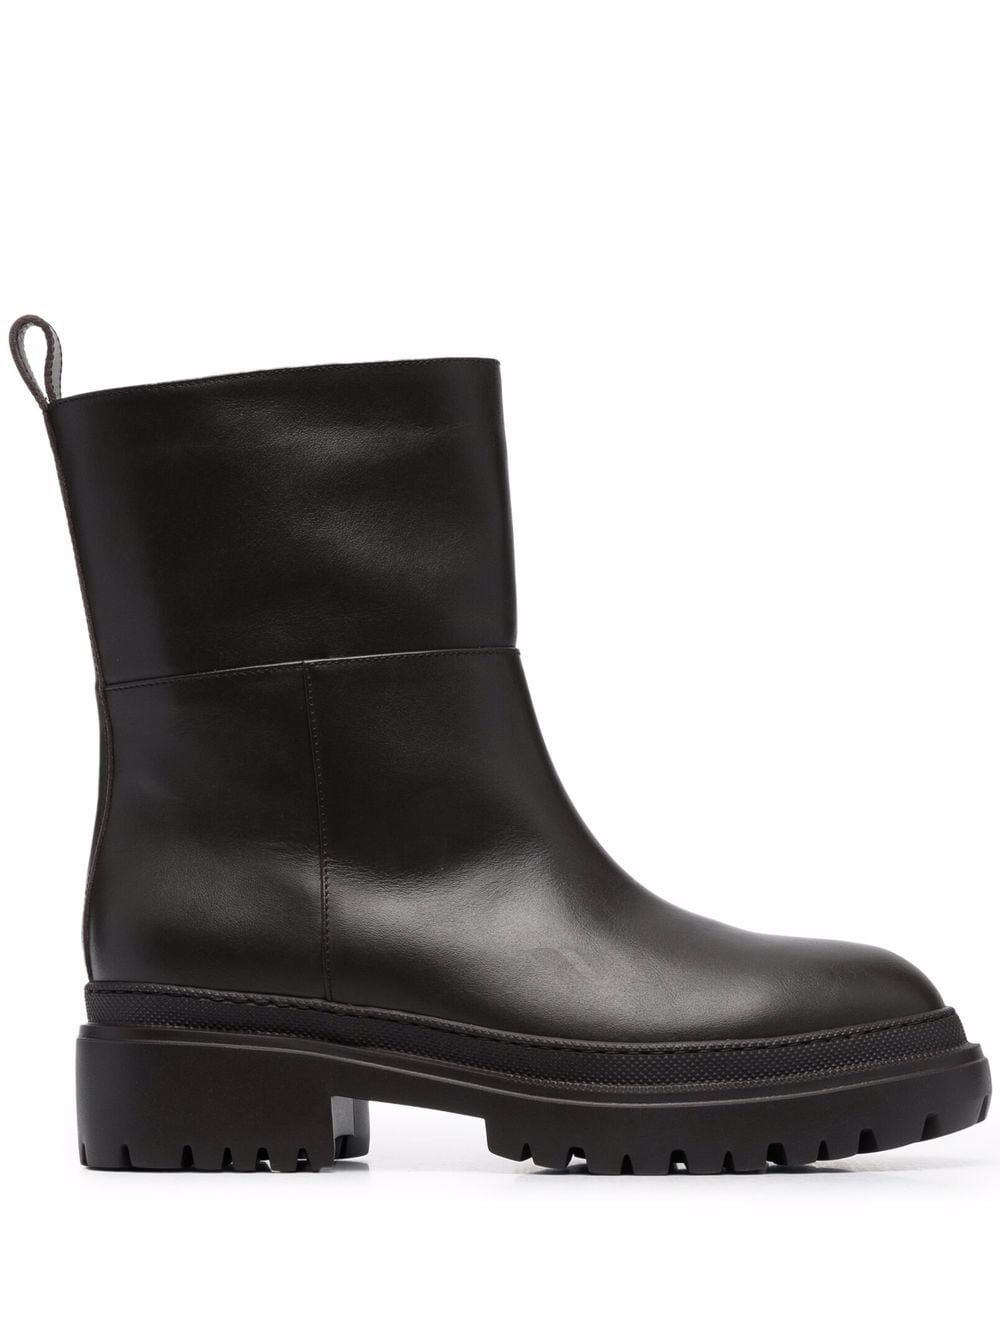 L'Autre Chose ankle leather boots